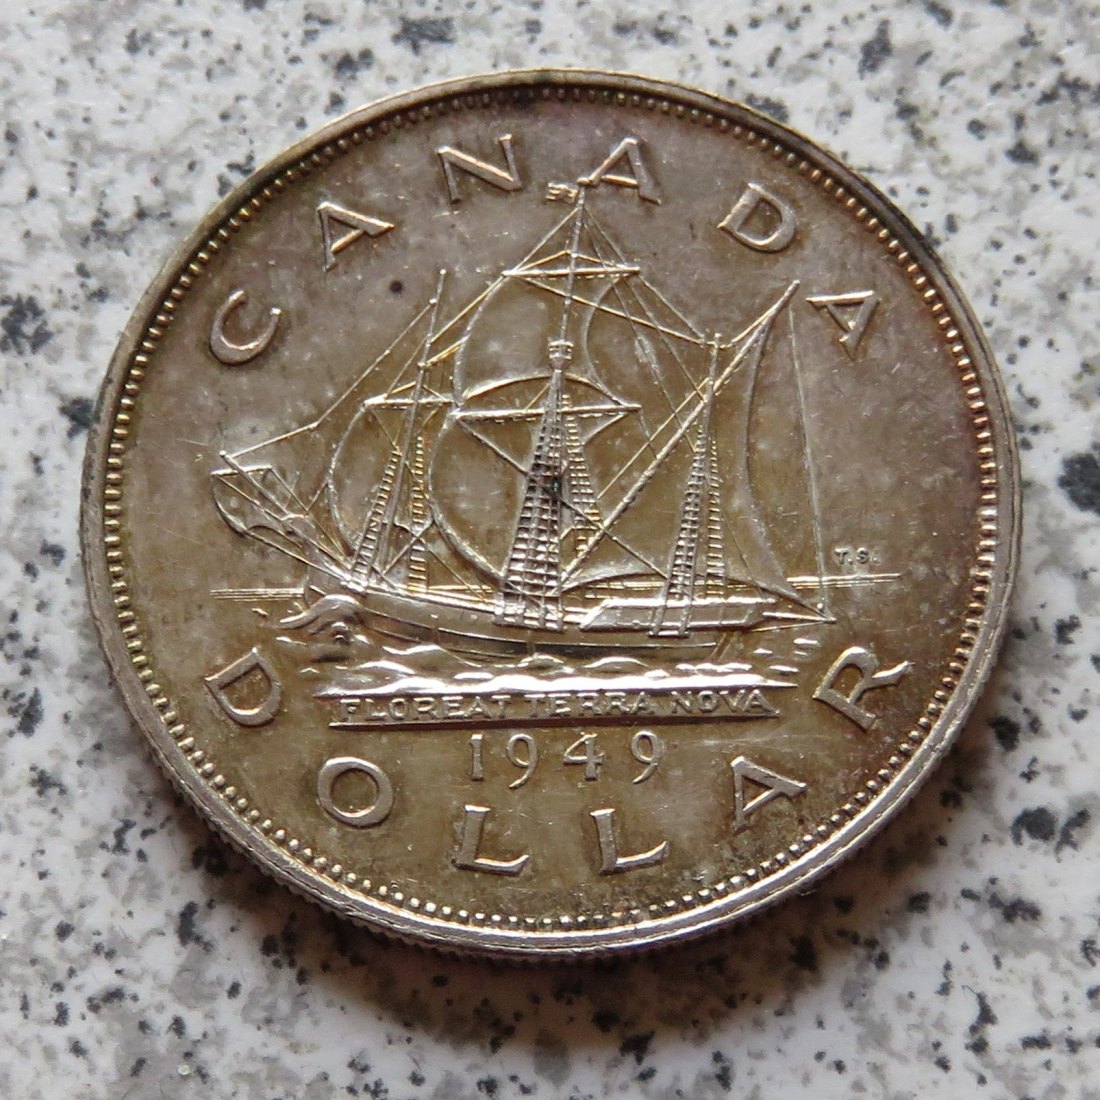  Canada 1 Dollar 1949   